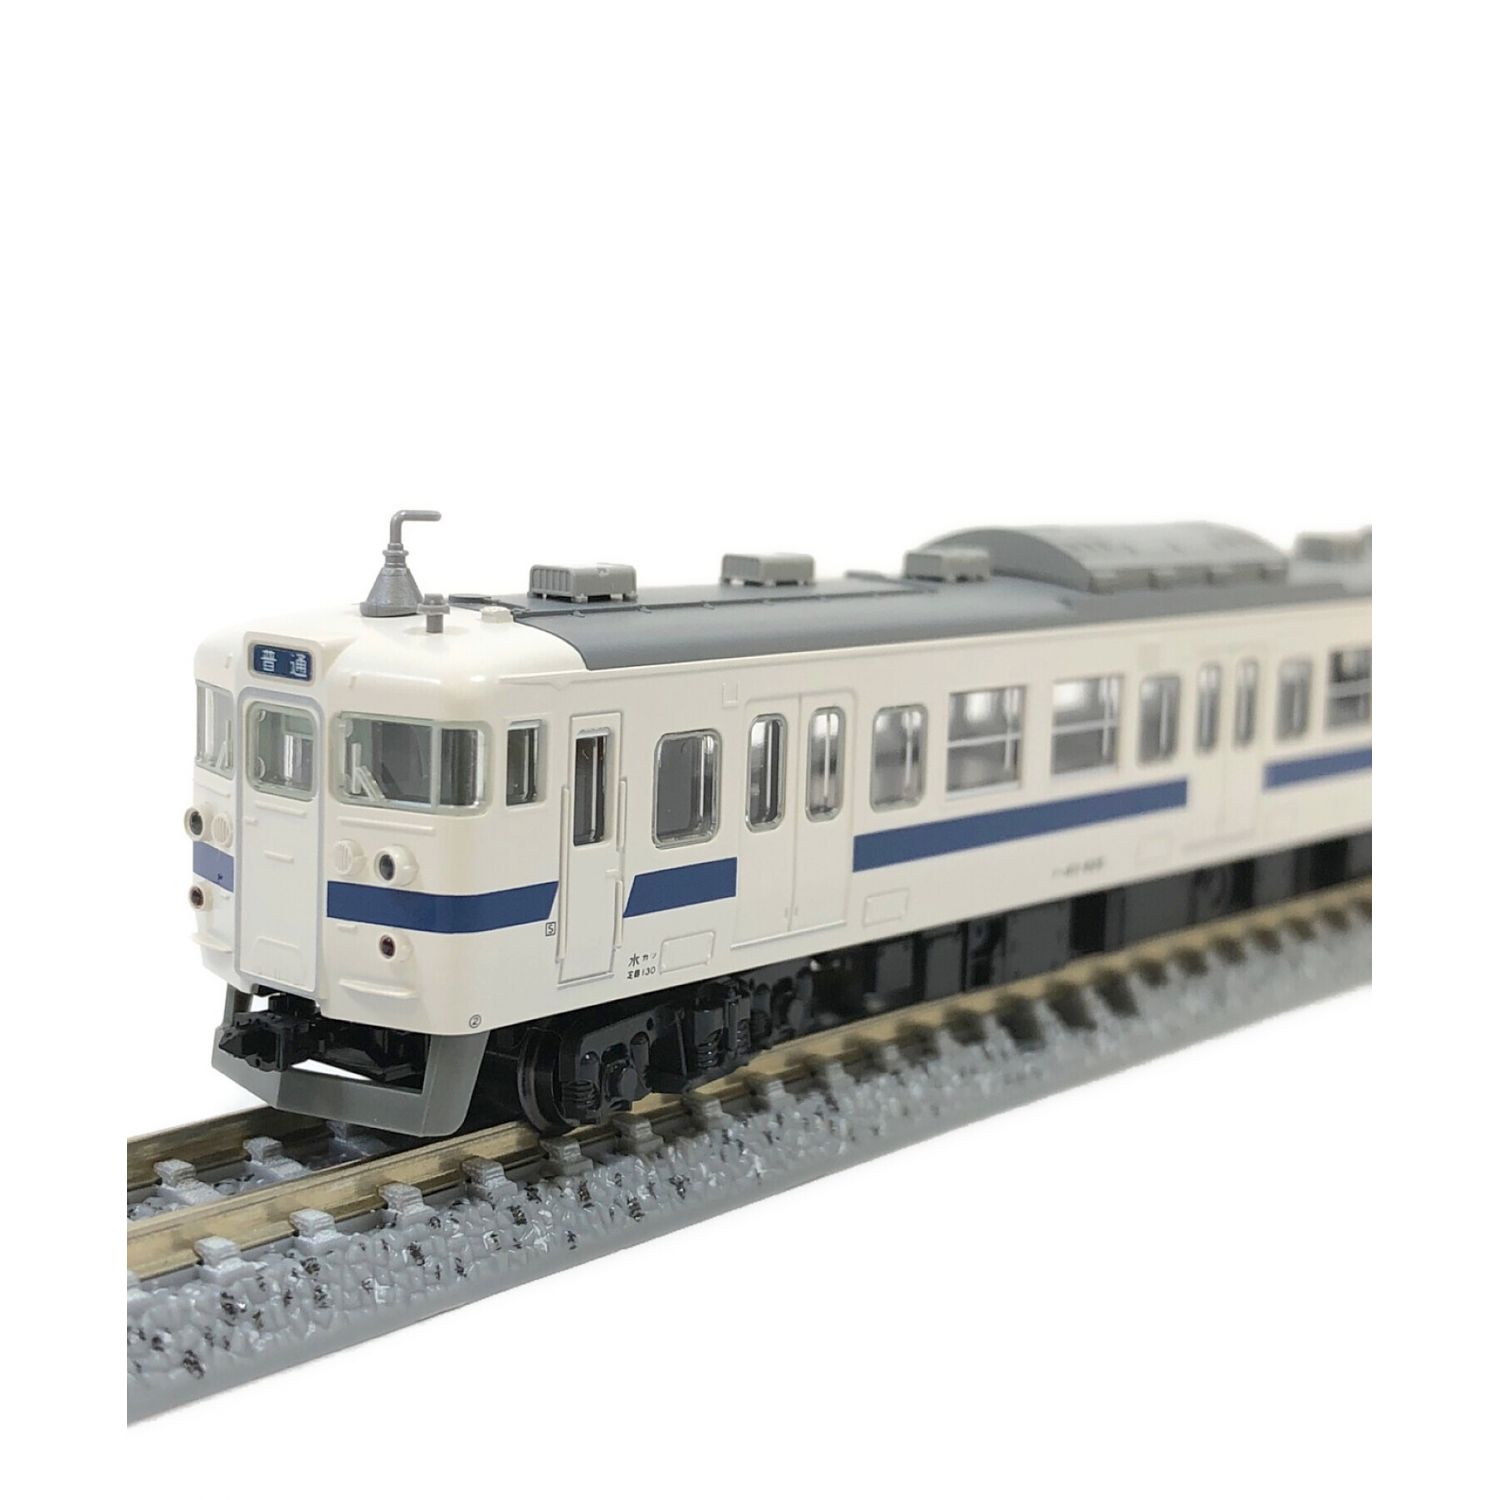 KATO (カトー) 模型 415系(常磐線・新色)4両セット 10-1537 